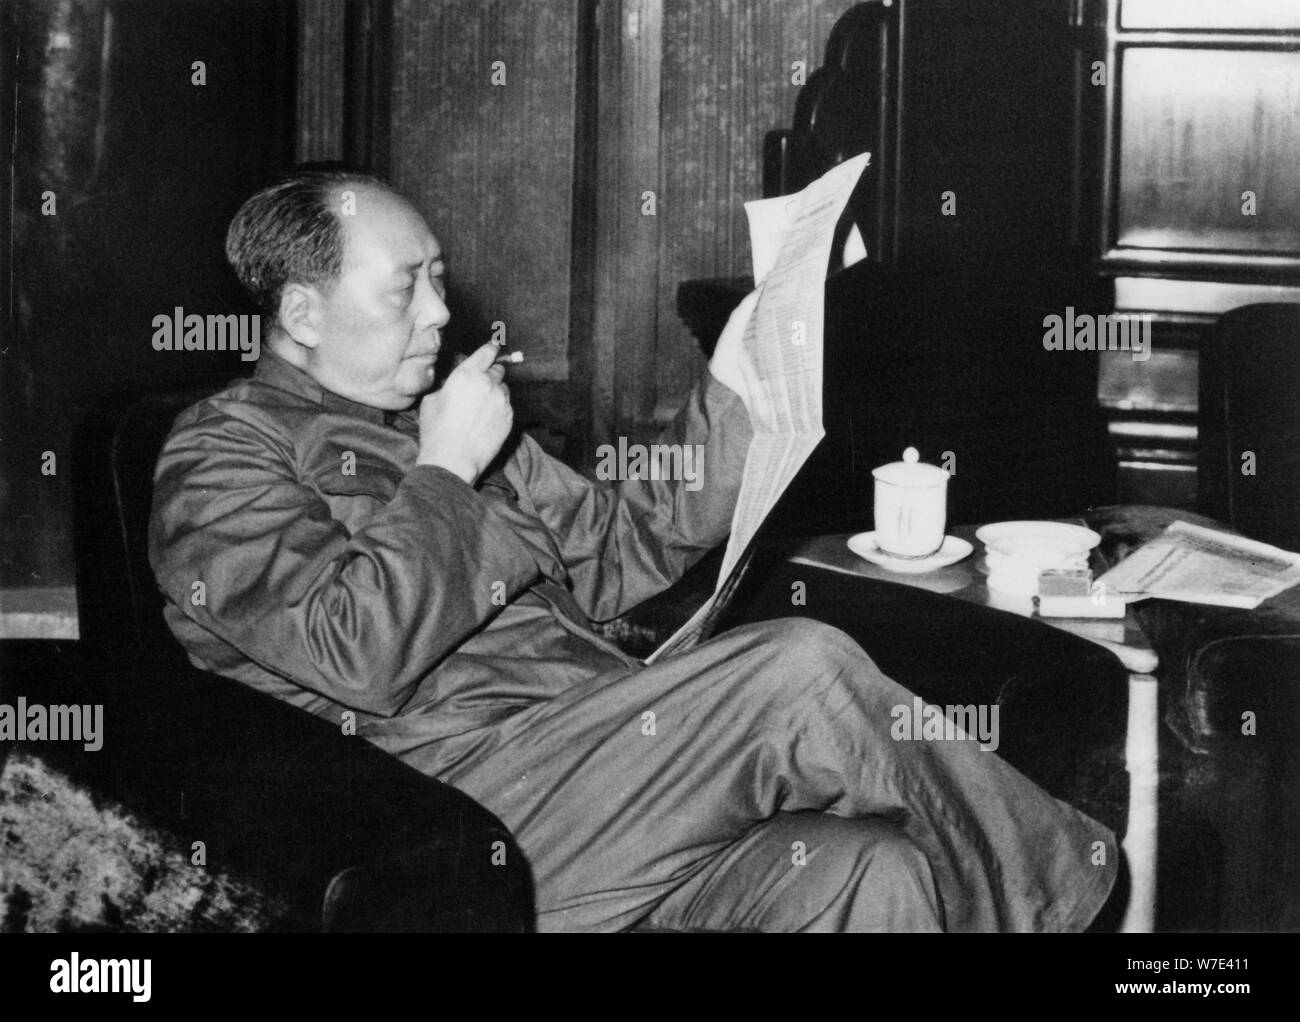 Mao Zedong, leader communiste chinois et révolutionnaire, c1960s( ?). Artiste : Inconnu Banque D'Images